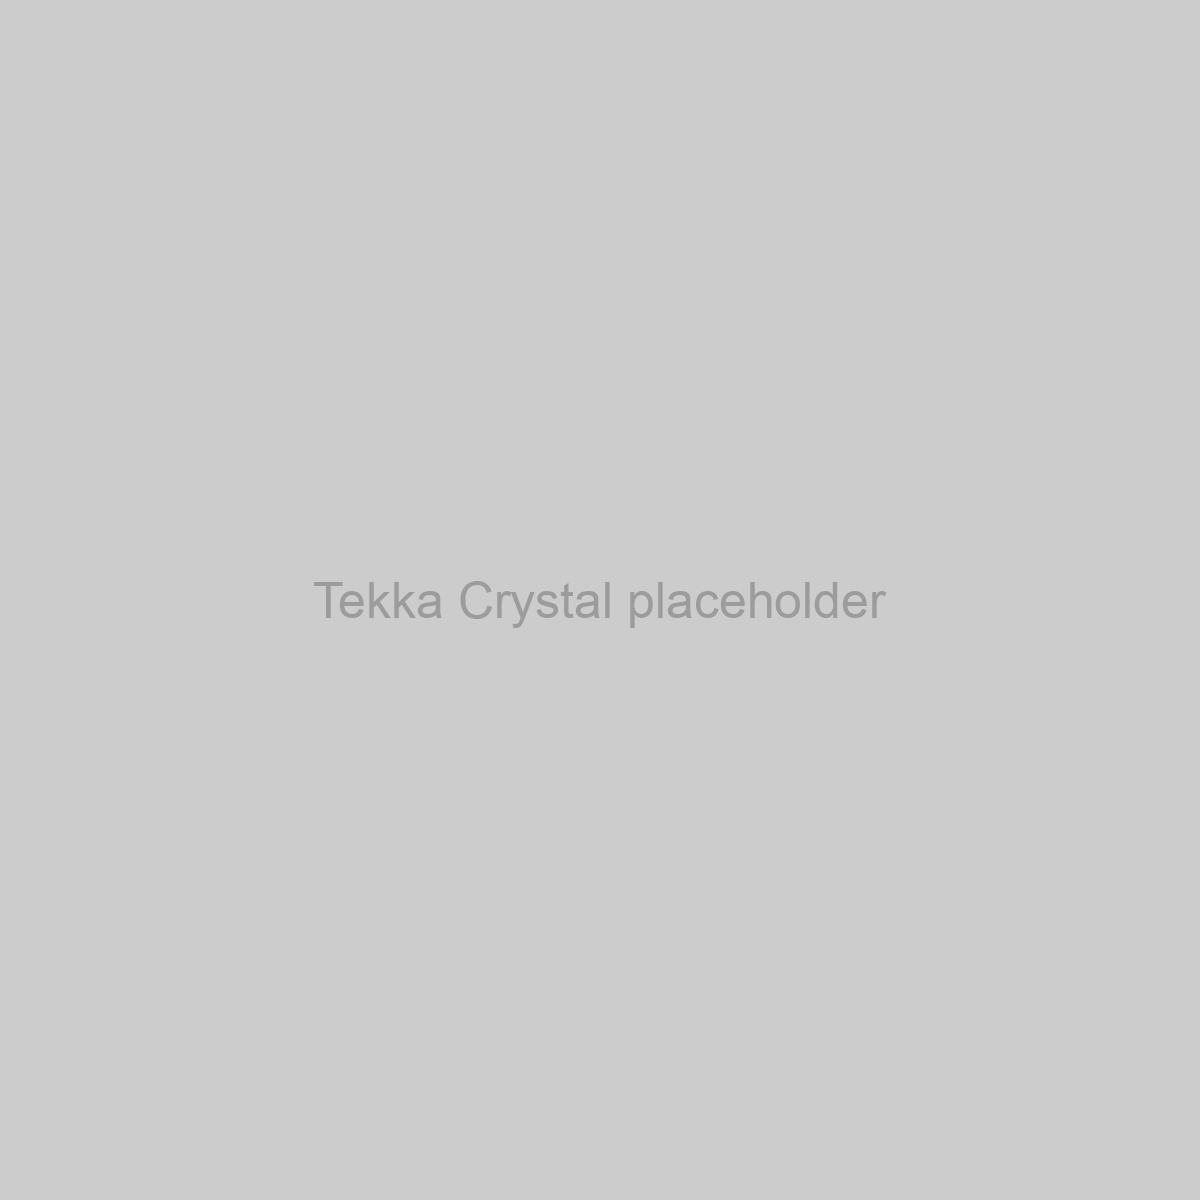 Tekka Crystal Placeholder Image